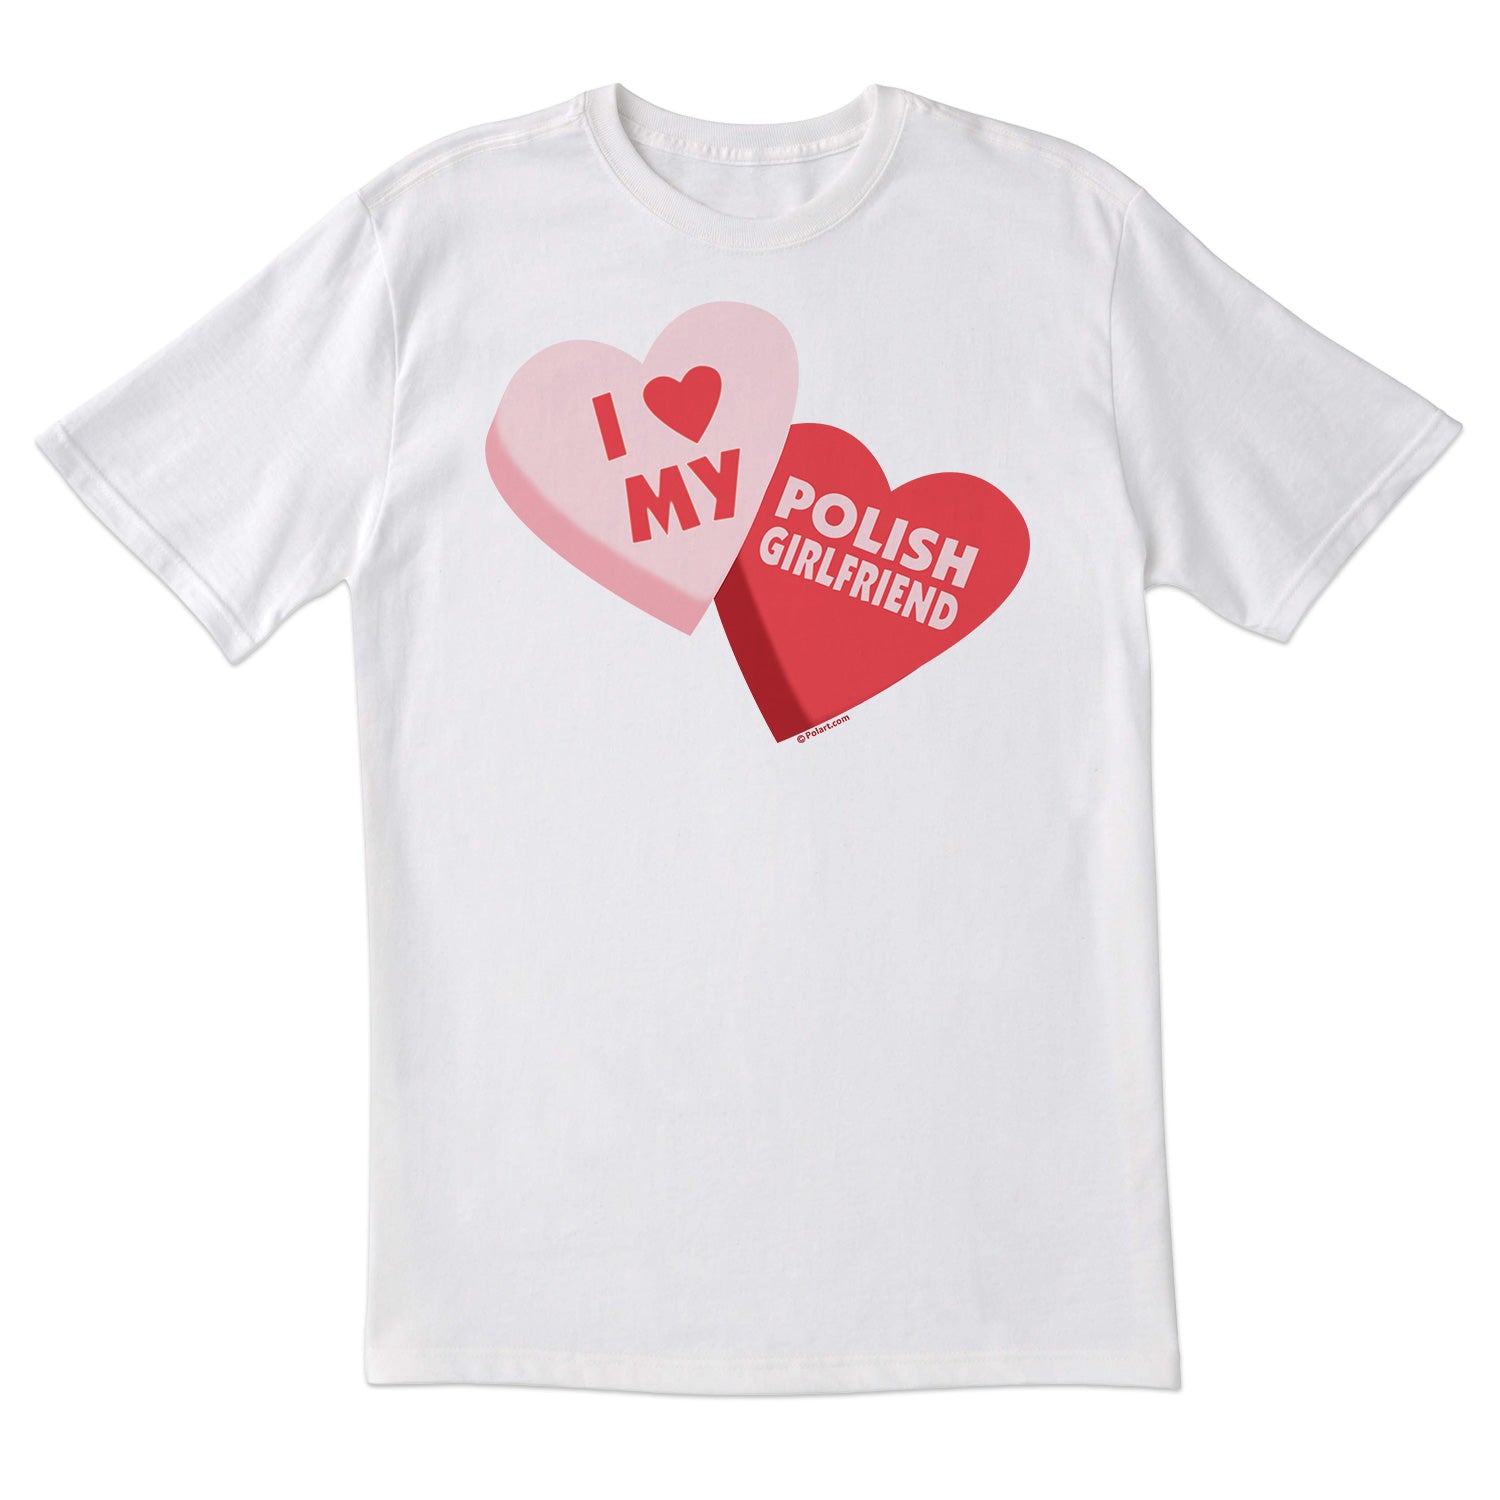 Sweethearts Polish Girlfriend Short Sleeve Tshirt